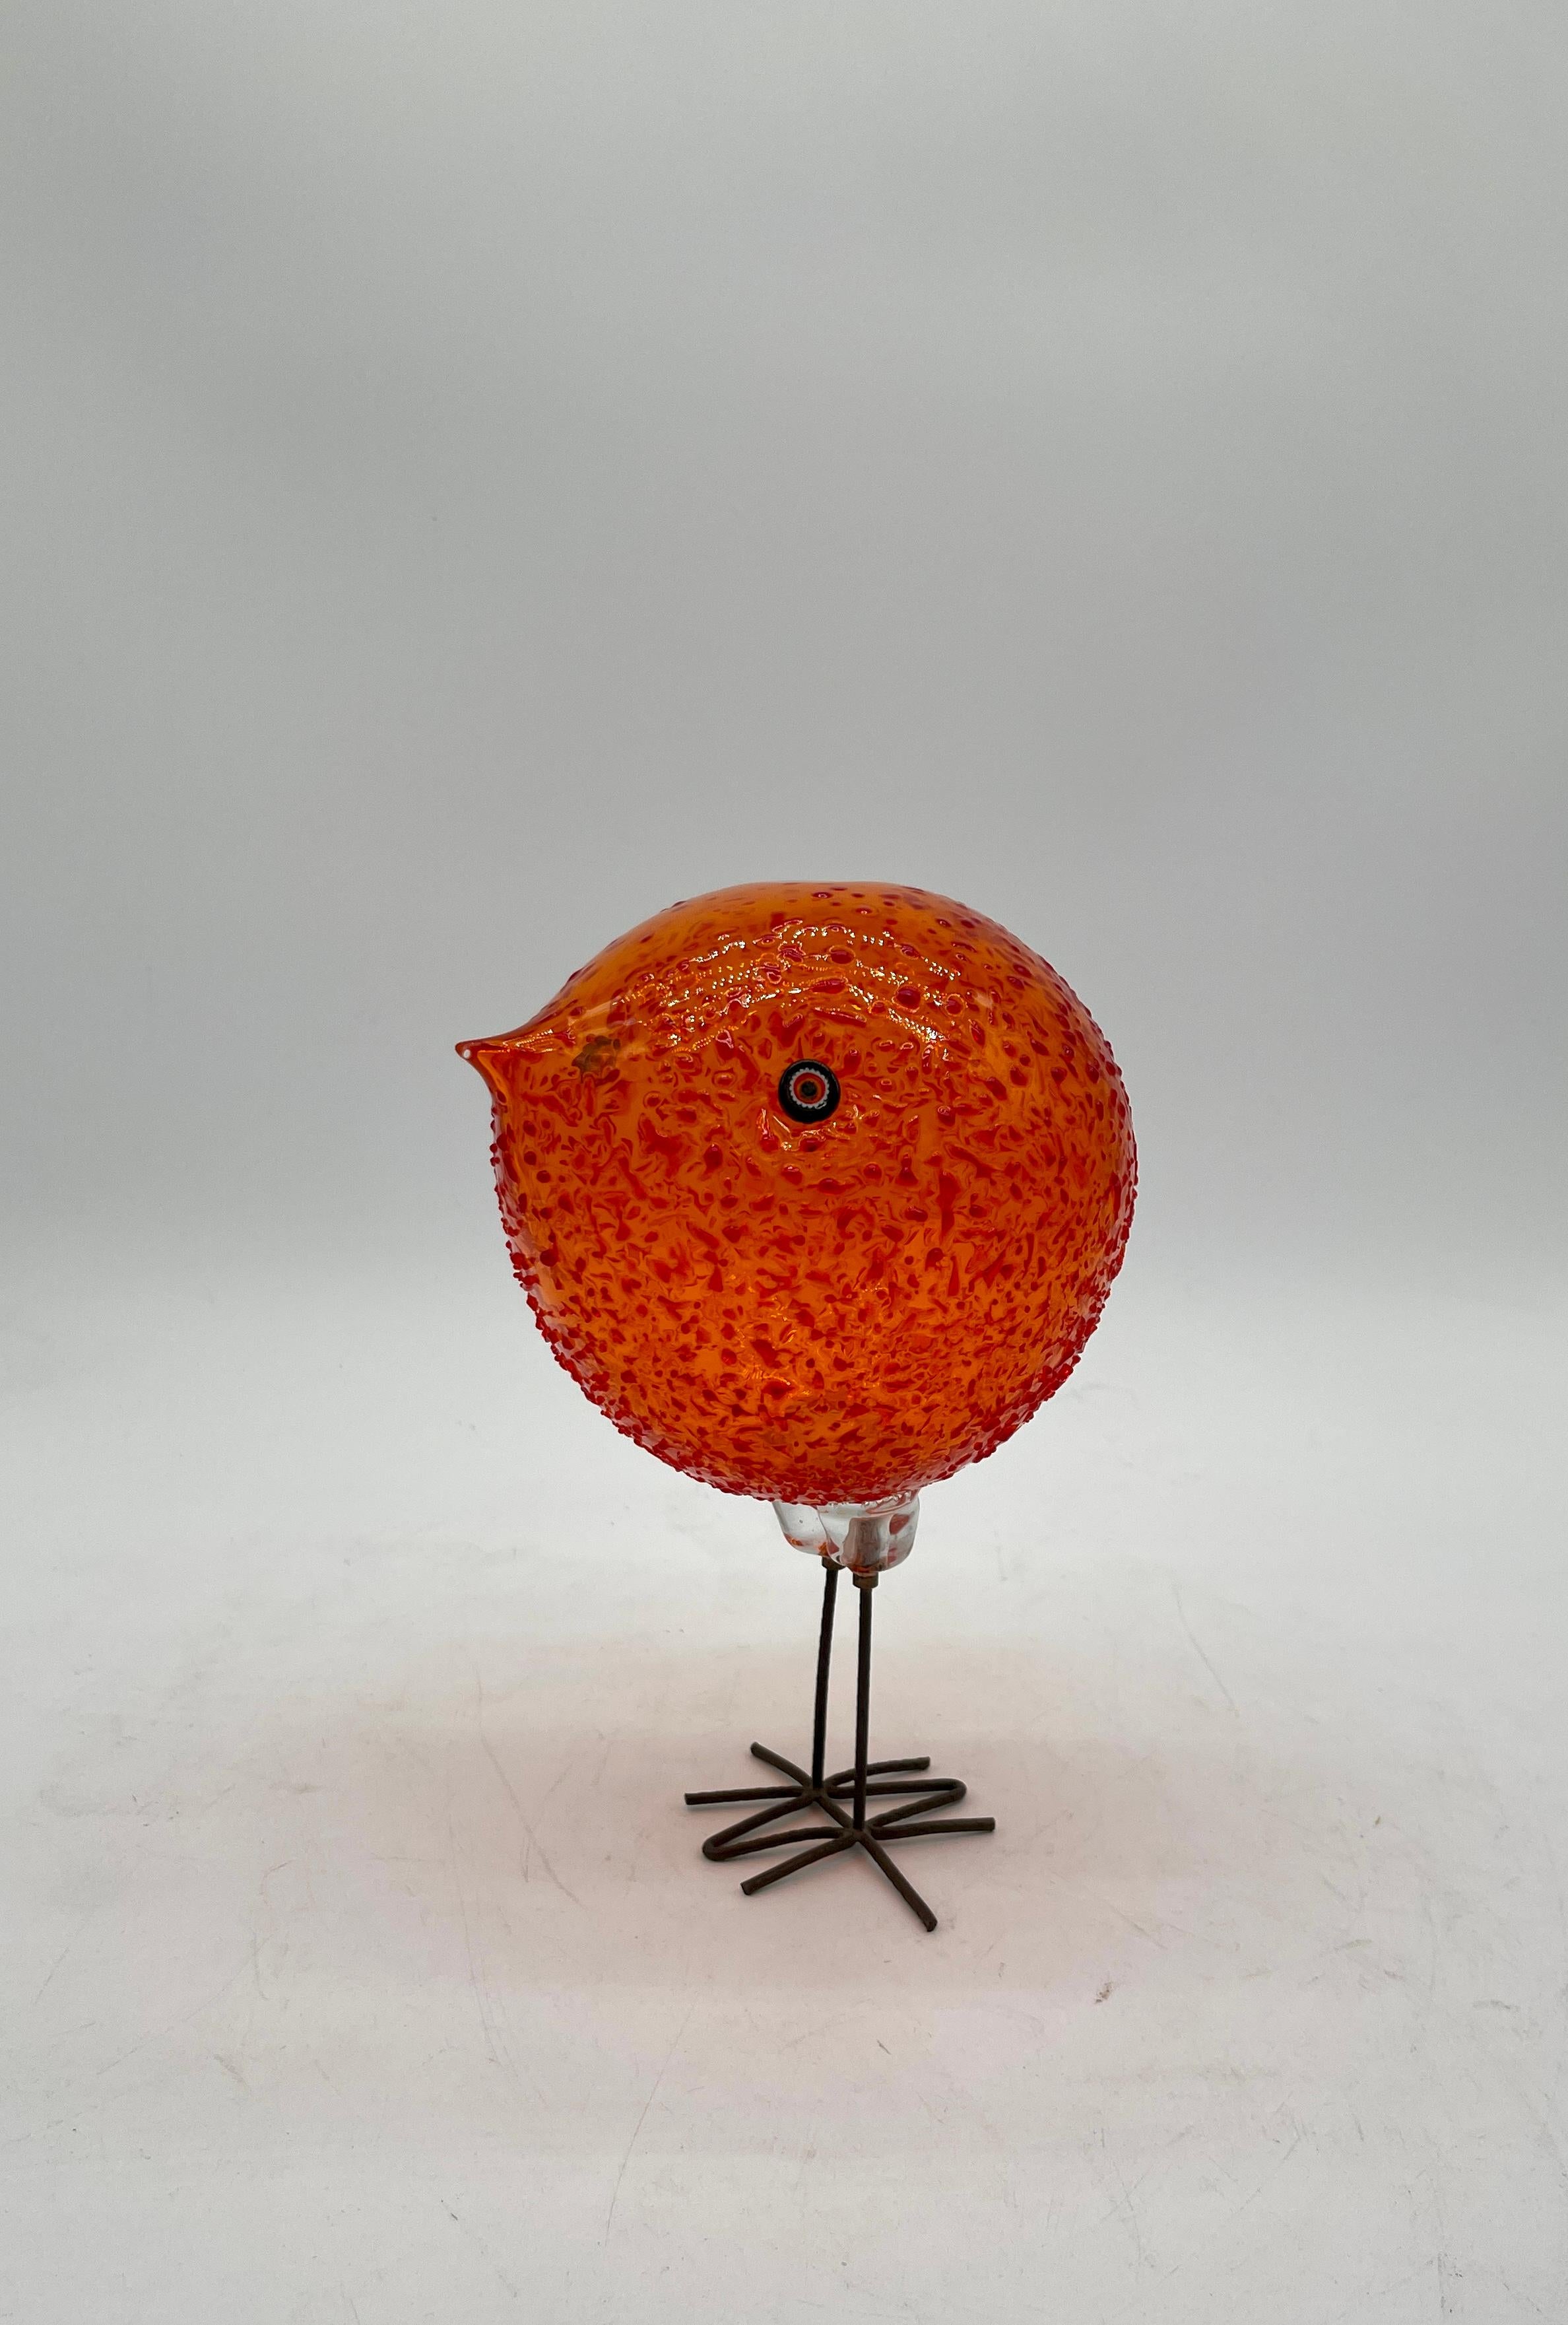 Superbe oiseau en verre d'art Alessandro Pianon pour Vistosi Murano. Design/One.
Bon état de conservation, sans ébréchures, fissures ou réparations.
Oiseau 